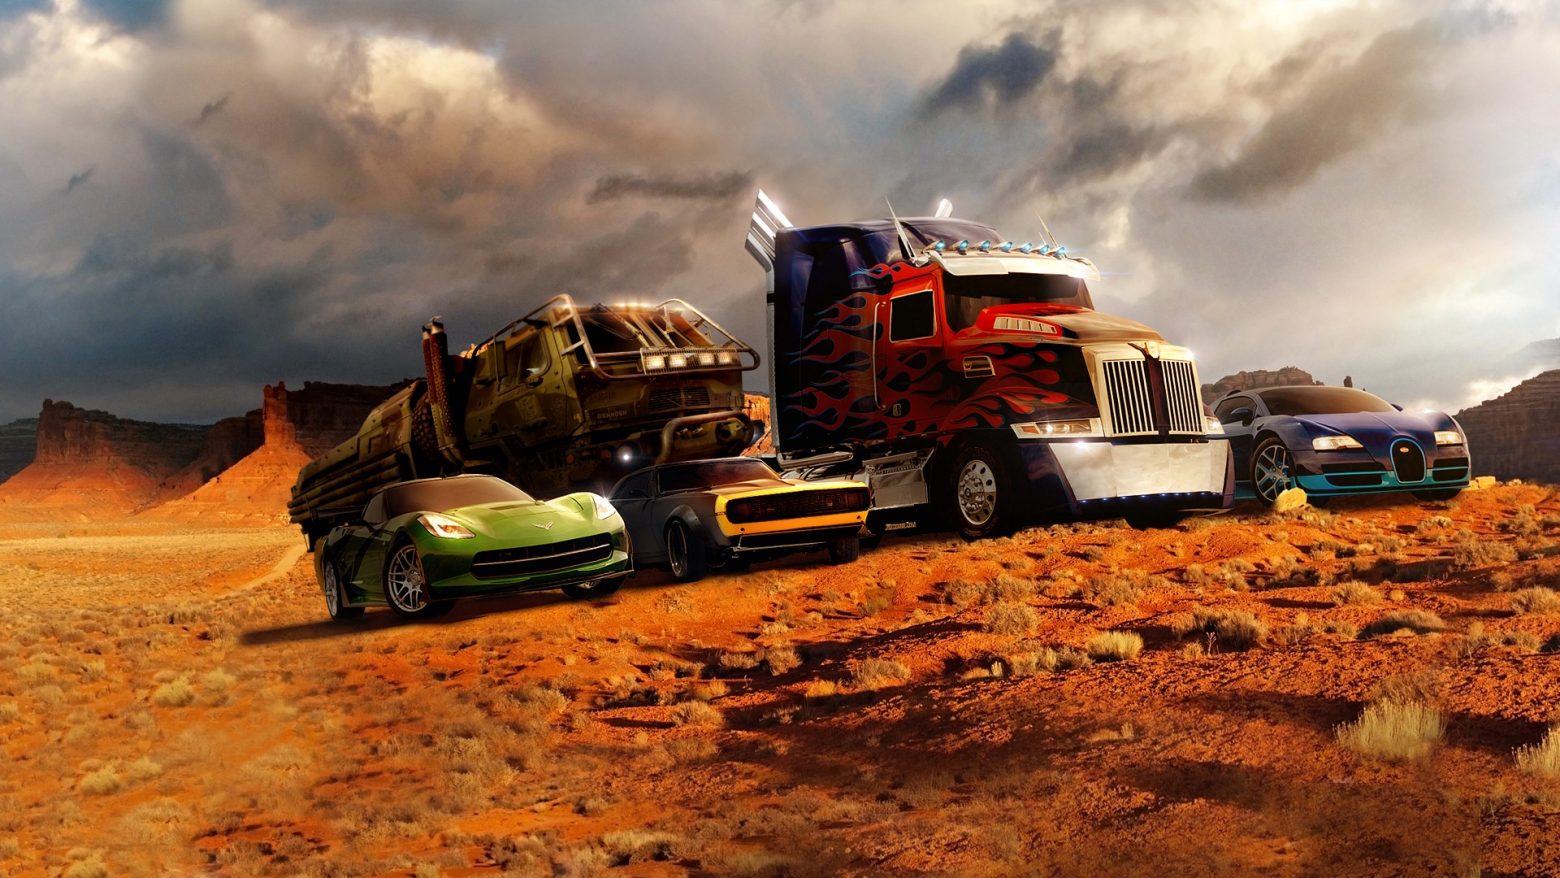 Πωλούνται αυτοκίνητα των Transformers για 2 εκατομμύρια δολάρια